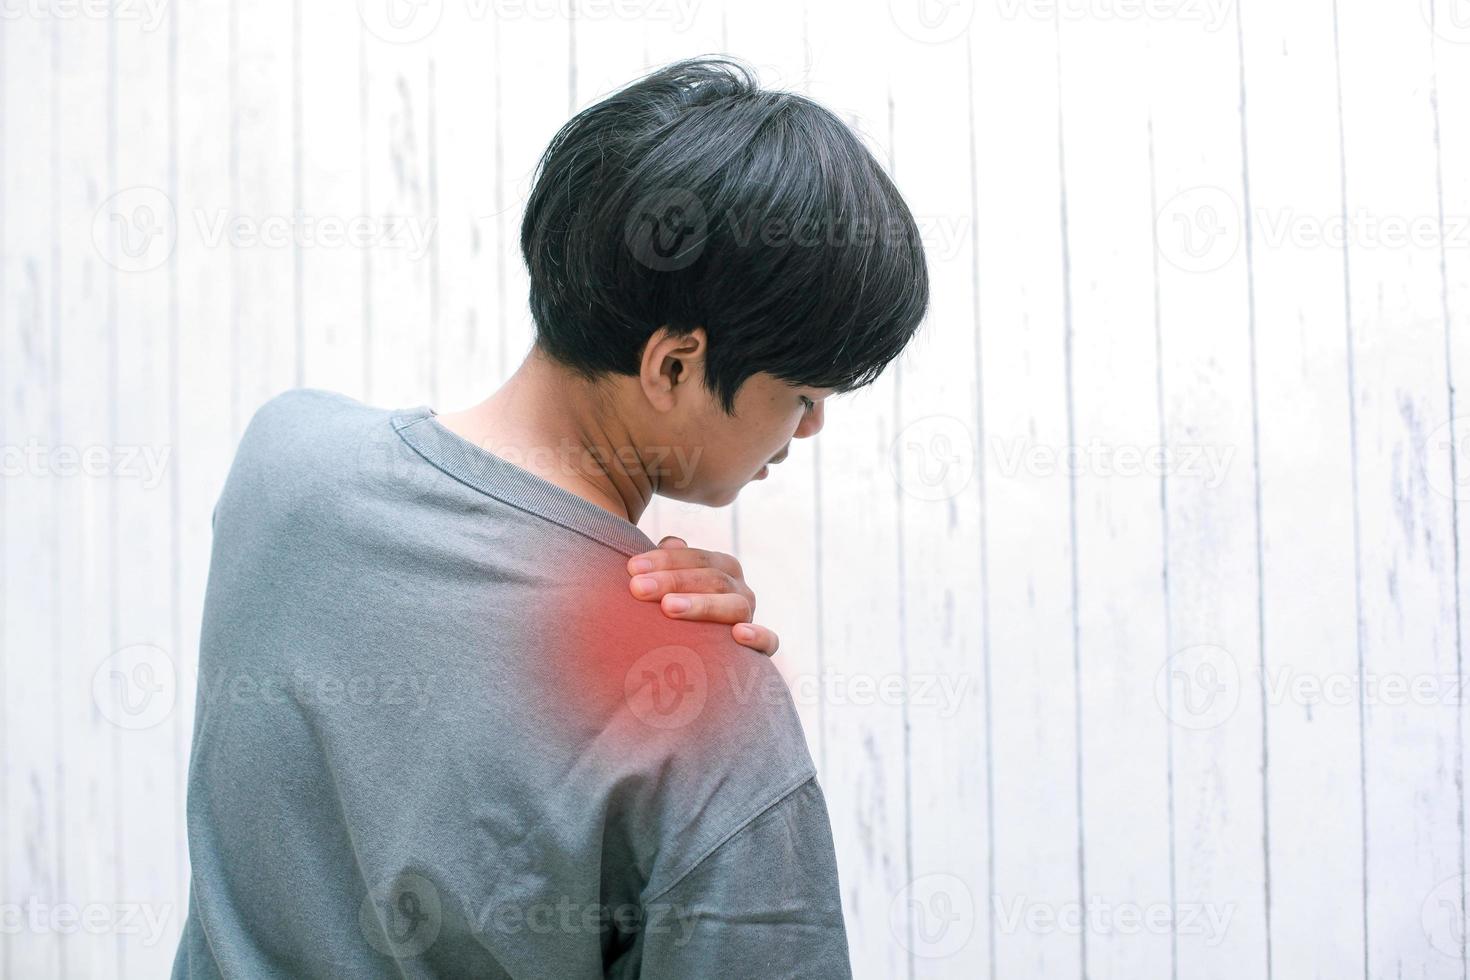 mensen, gezondheidszorg en probleemconcept - ongelukkige jonge man die thuis lijdt aan nek- of schouderpijn foto